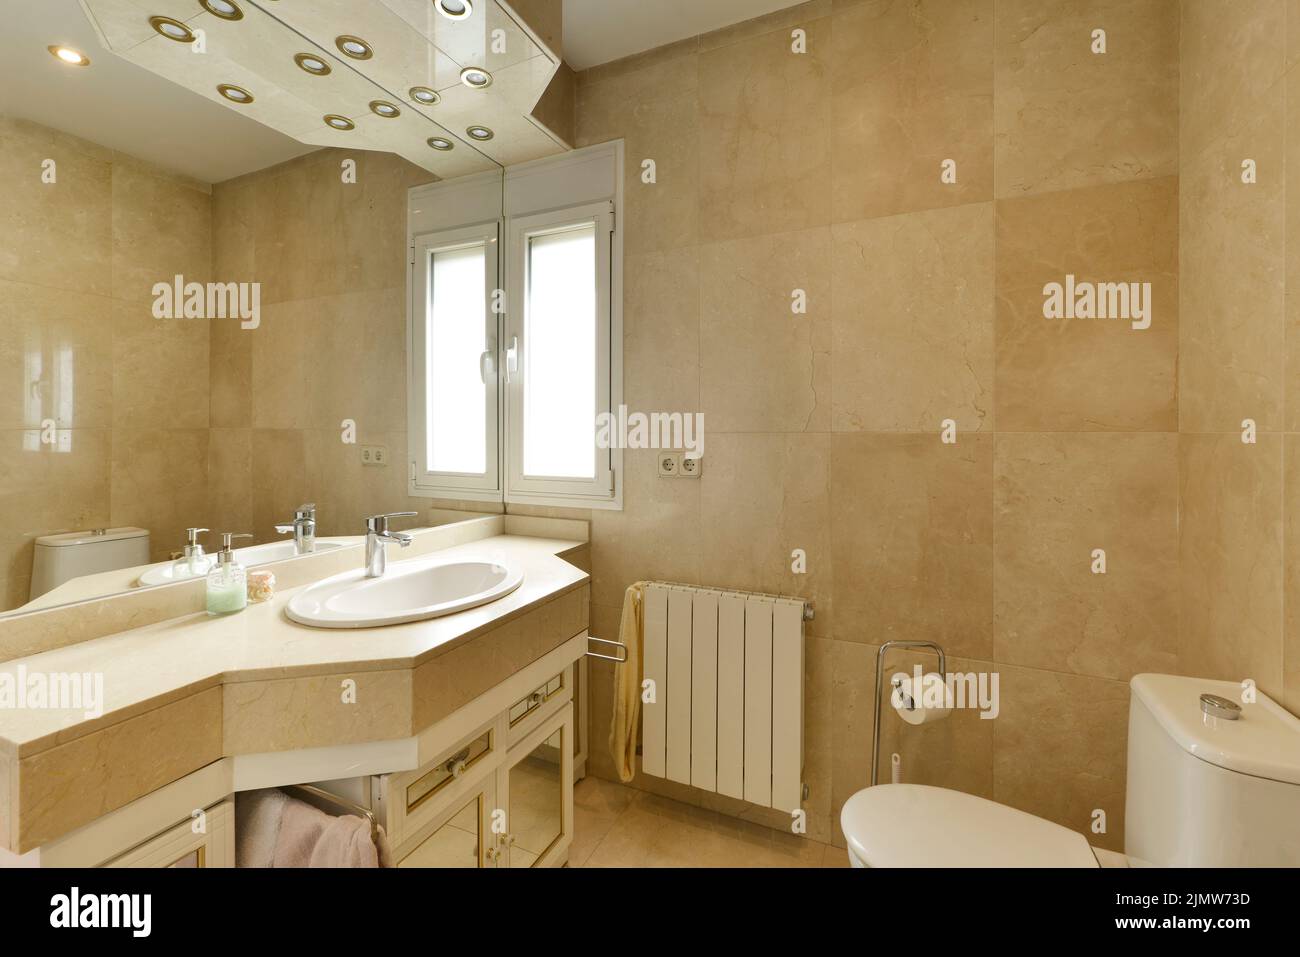 Badezimmer mit cremefarbenem Marmorwaschbecken, großem rahmenlosen Wandspiegel und unbeleuchteten Halogenlampen Stockfoto